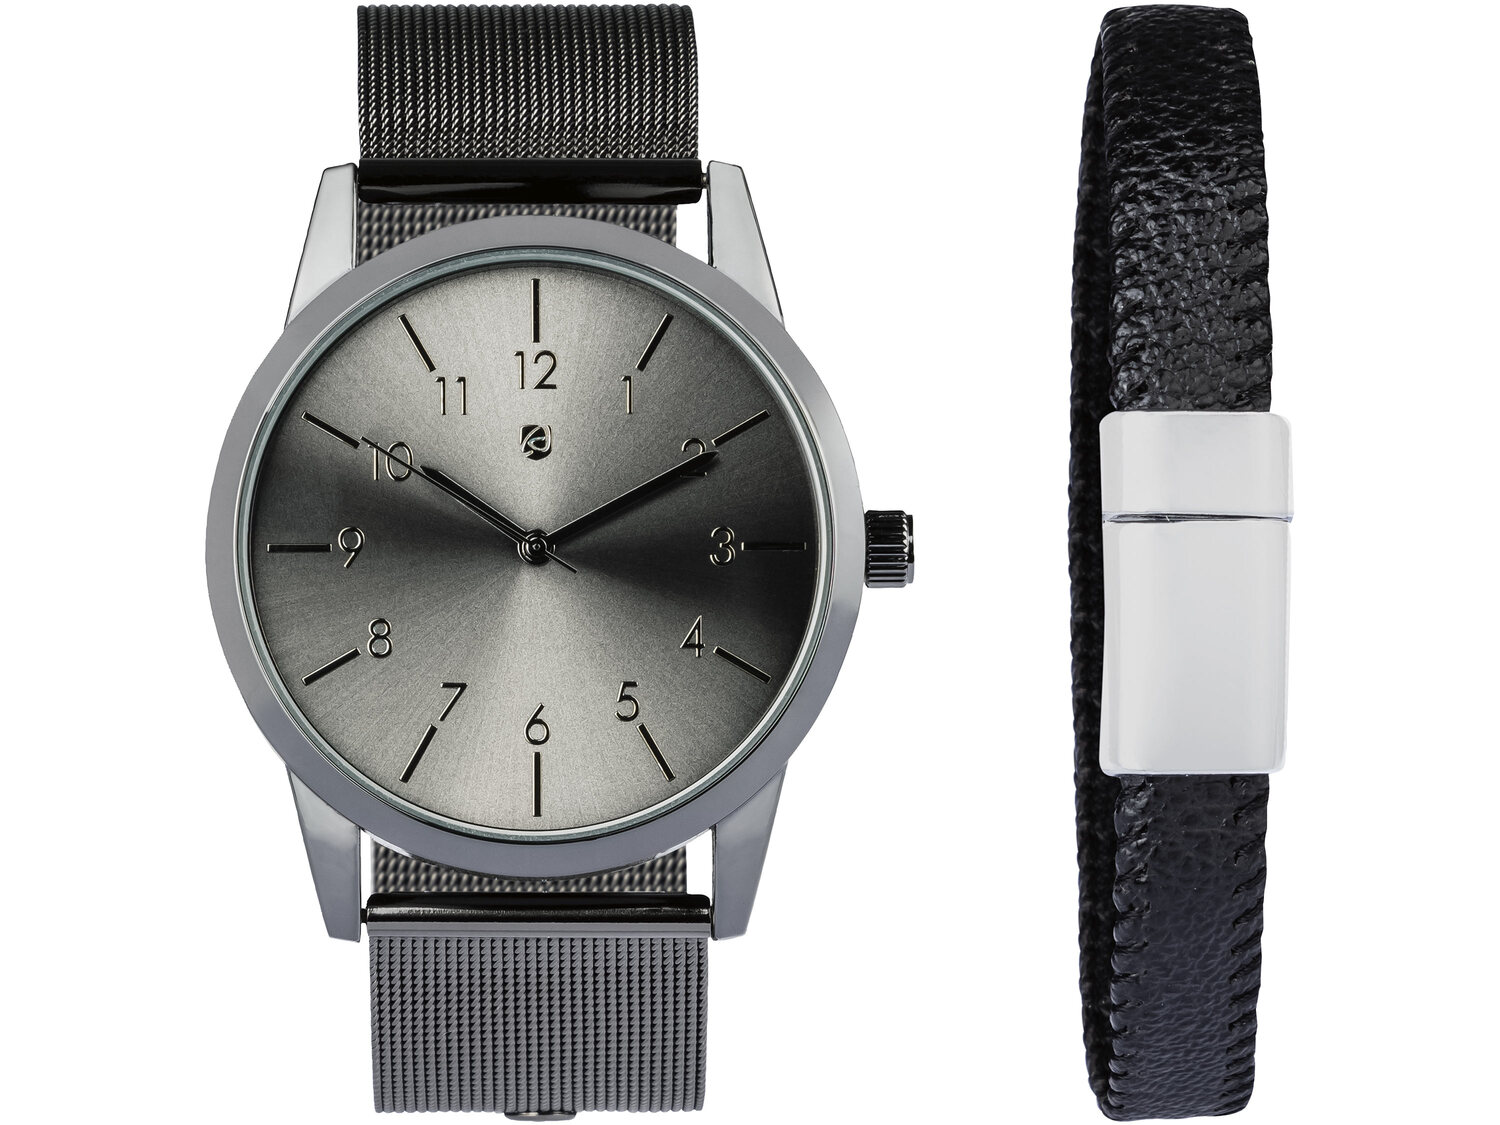 Zegarek na rękę Auriol, cena 29,99 PLN 
4 zestawy do wyboru 
- z dodatkową ozdobną ...